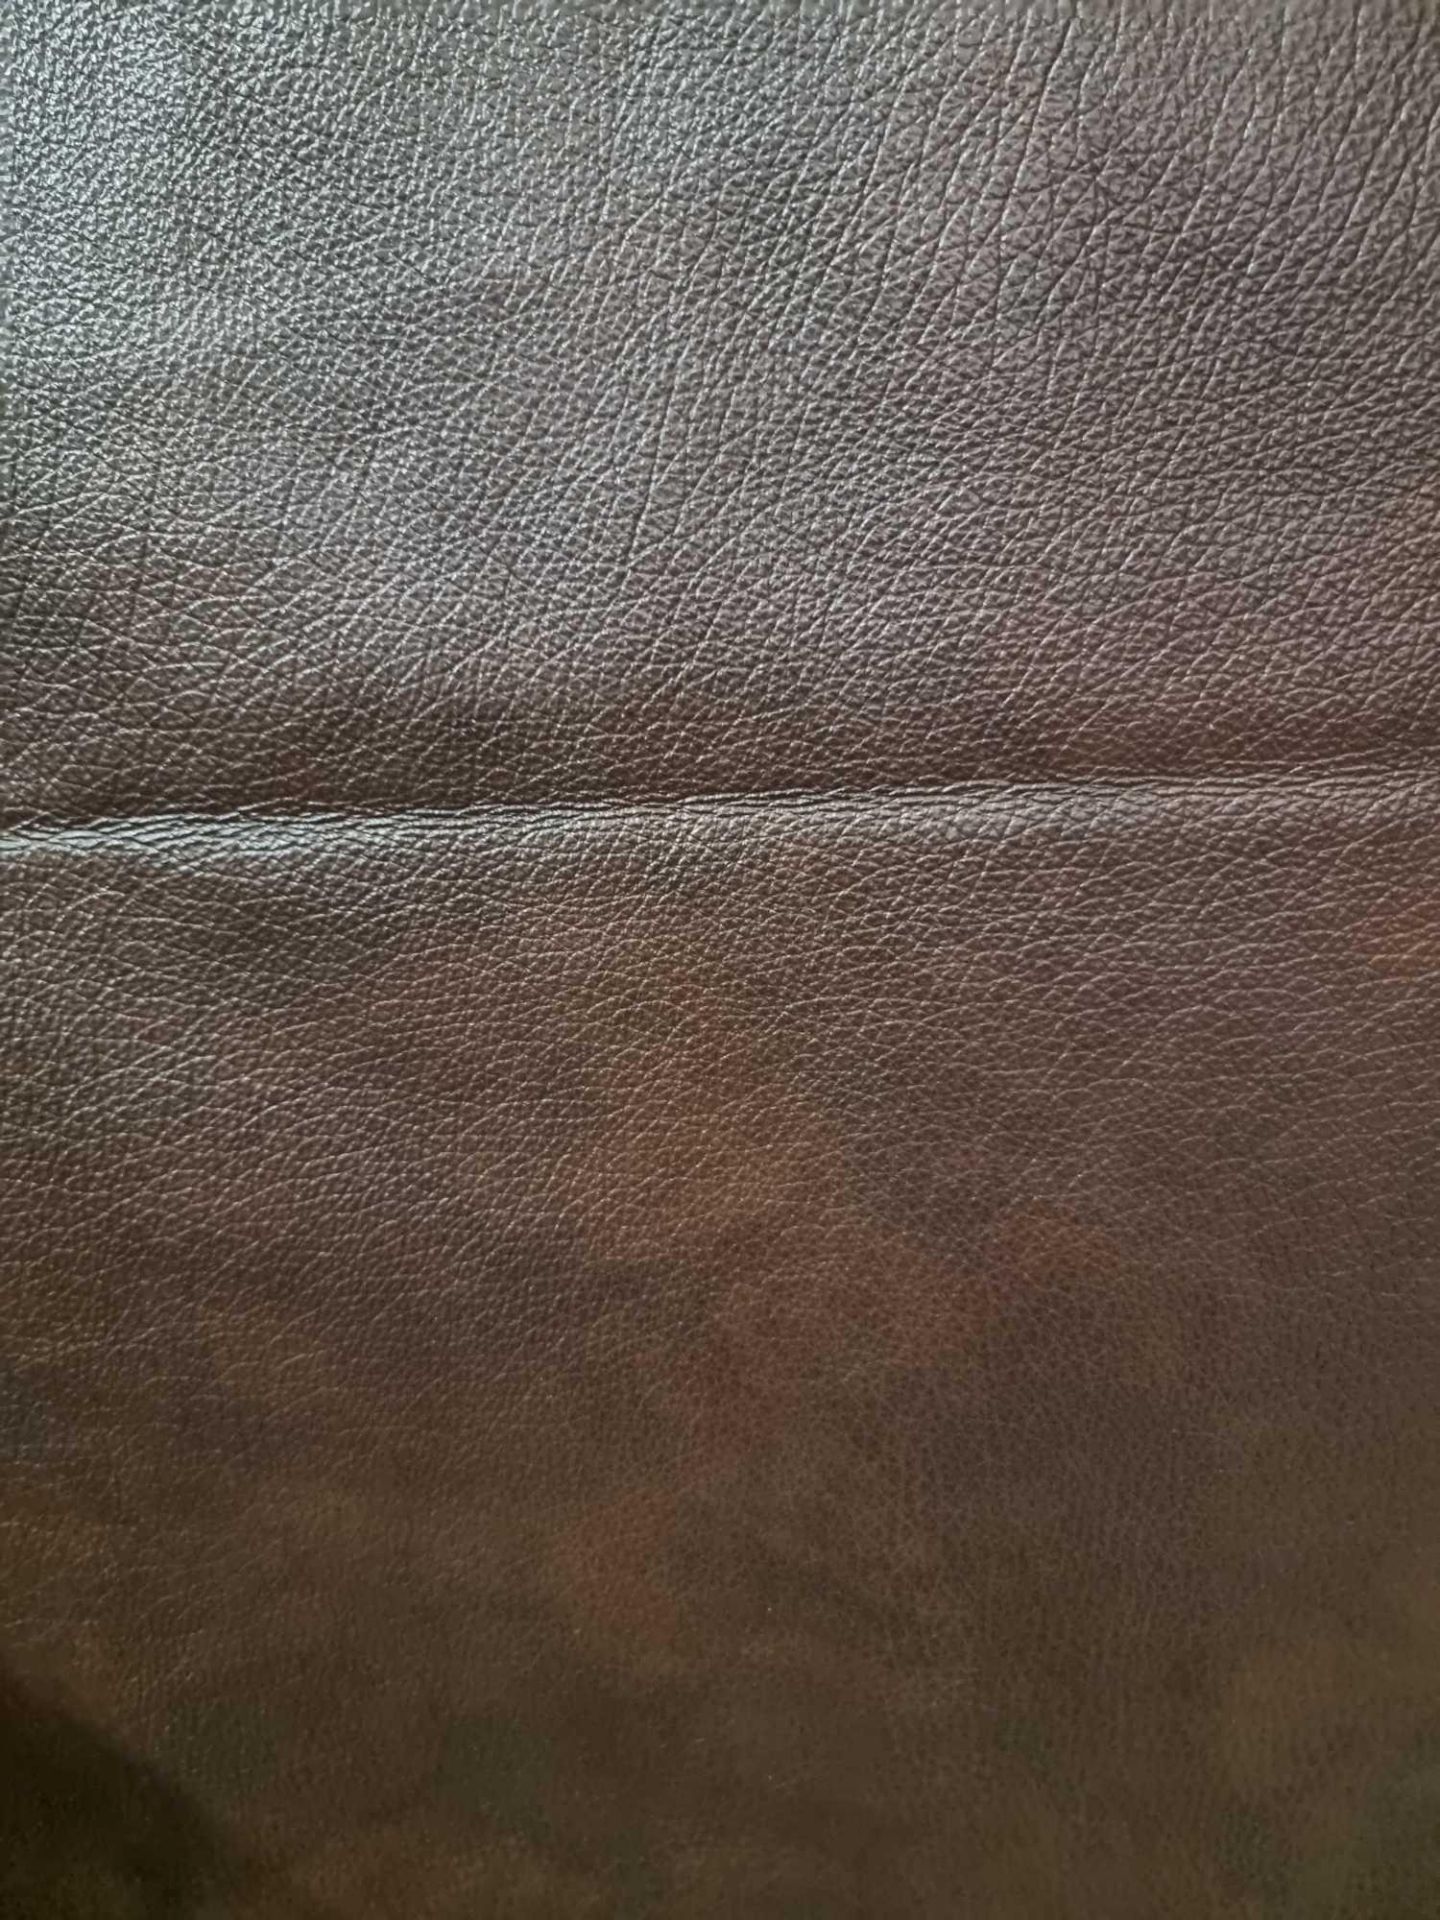 Trim International Memphis Brown Leather Hide approximately 4 62M2 2 2 x 2 1cm ( Hide No,186) - Bild 2 aus 2